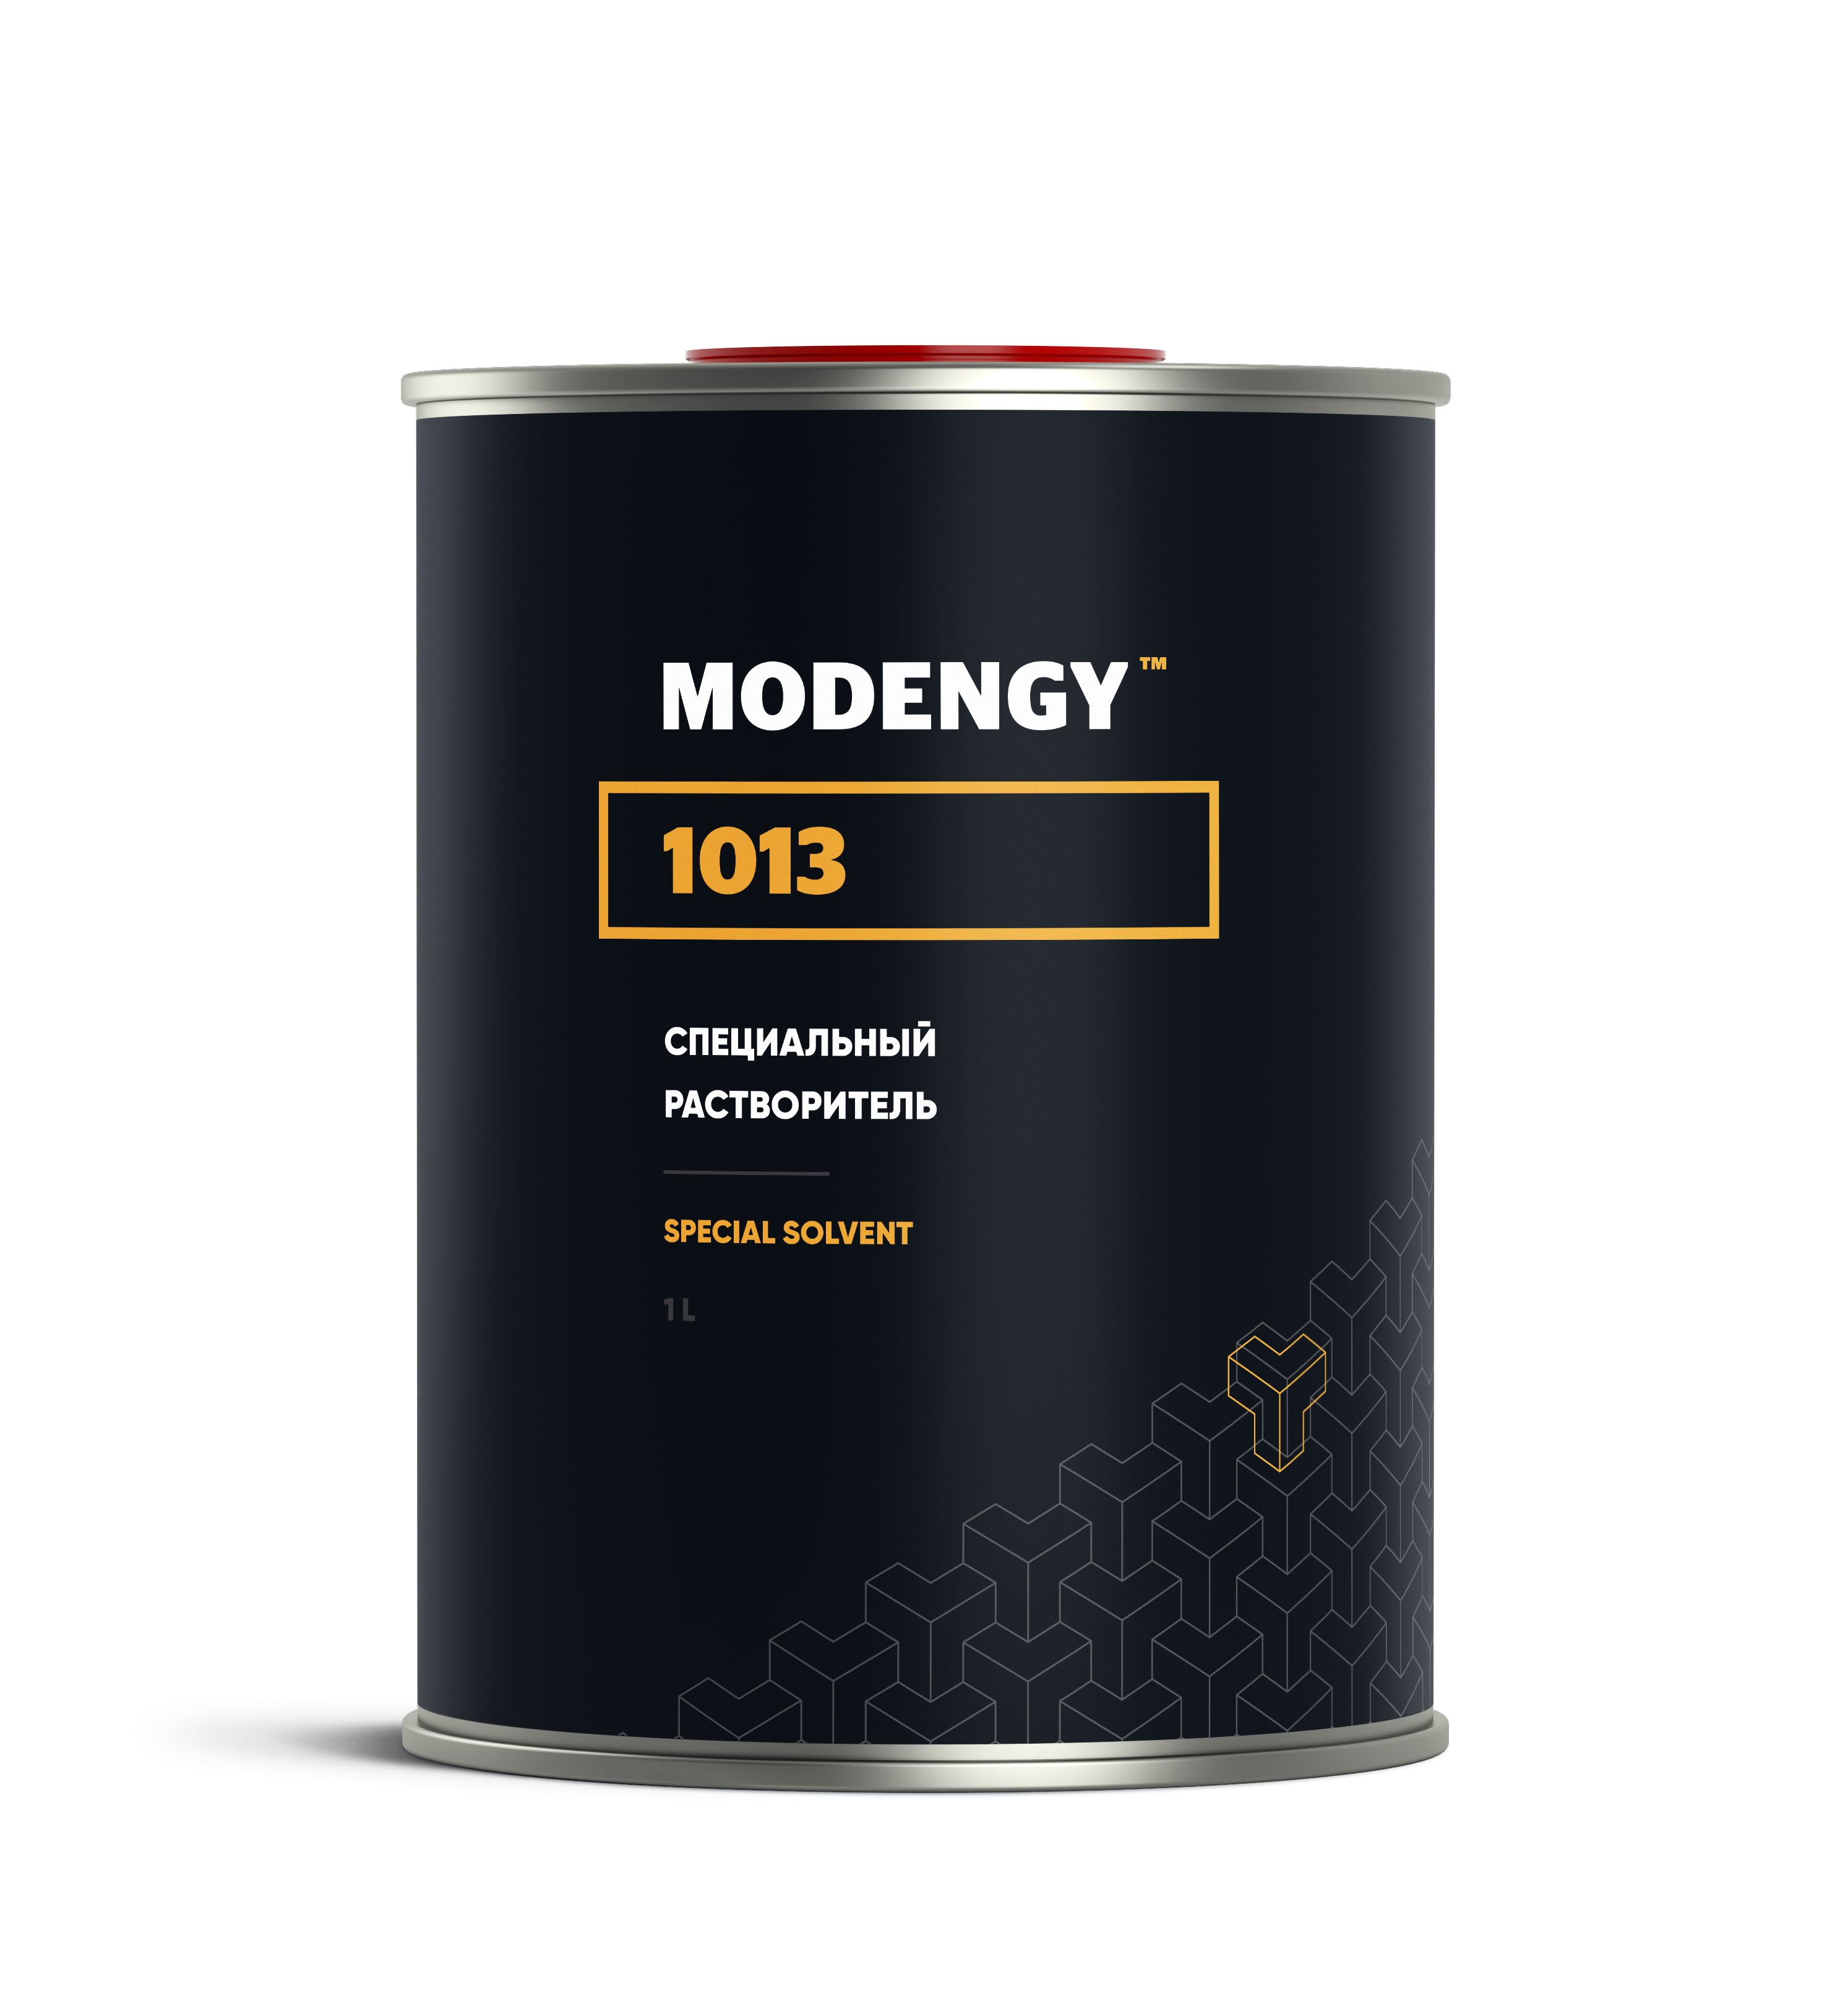 Специальный растворитель MODENGY 1013 (1 л) специальный очиститель активатор modengy 4 5 л